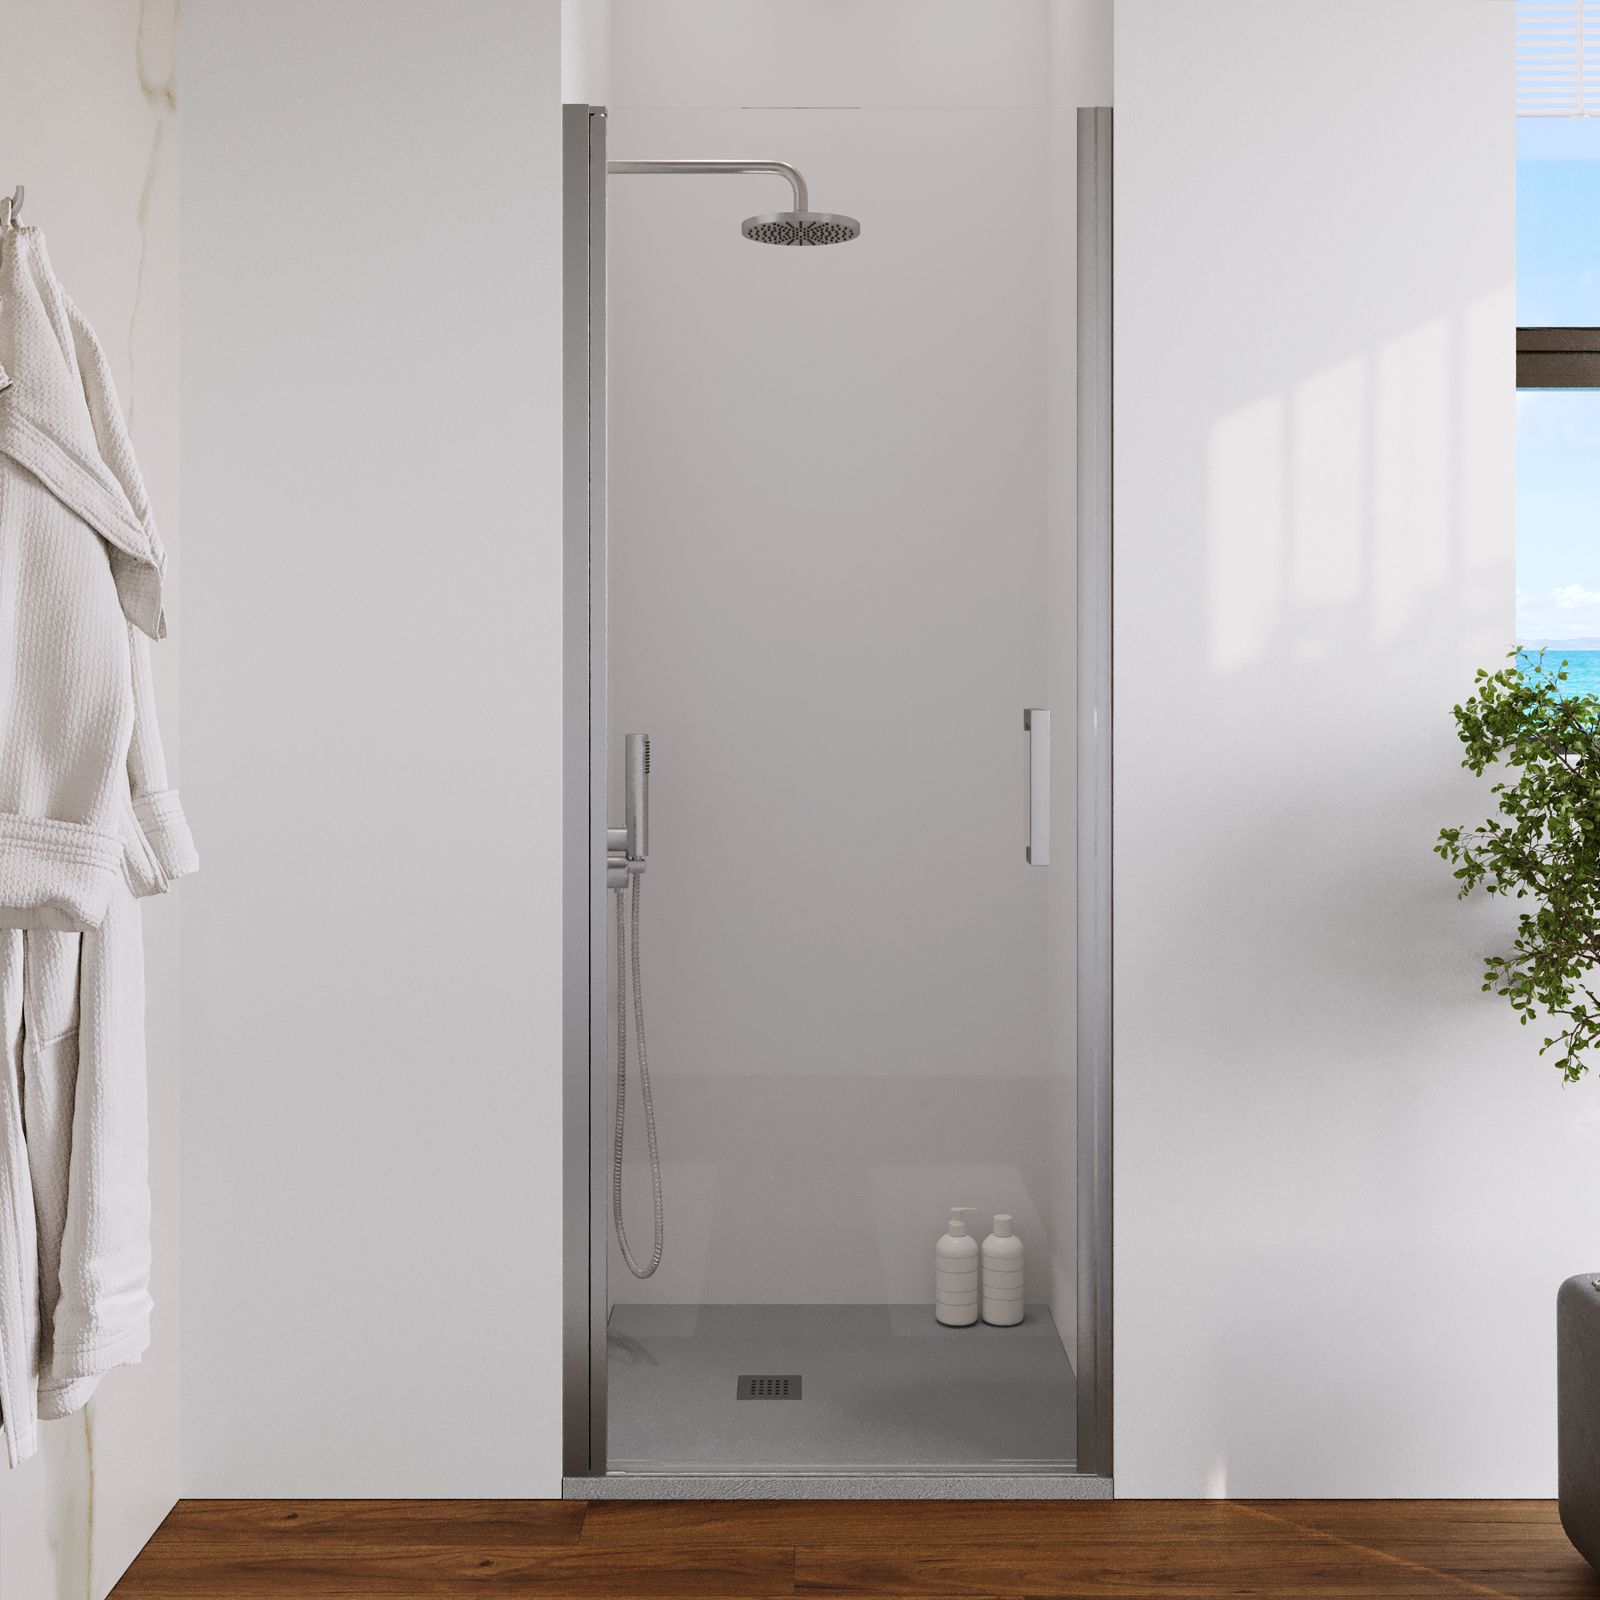 Porta doccia battente 80 cm per nicchia vetro temperato trasparente 8 mm  anticalcare - Artego